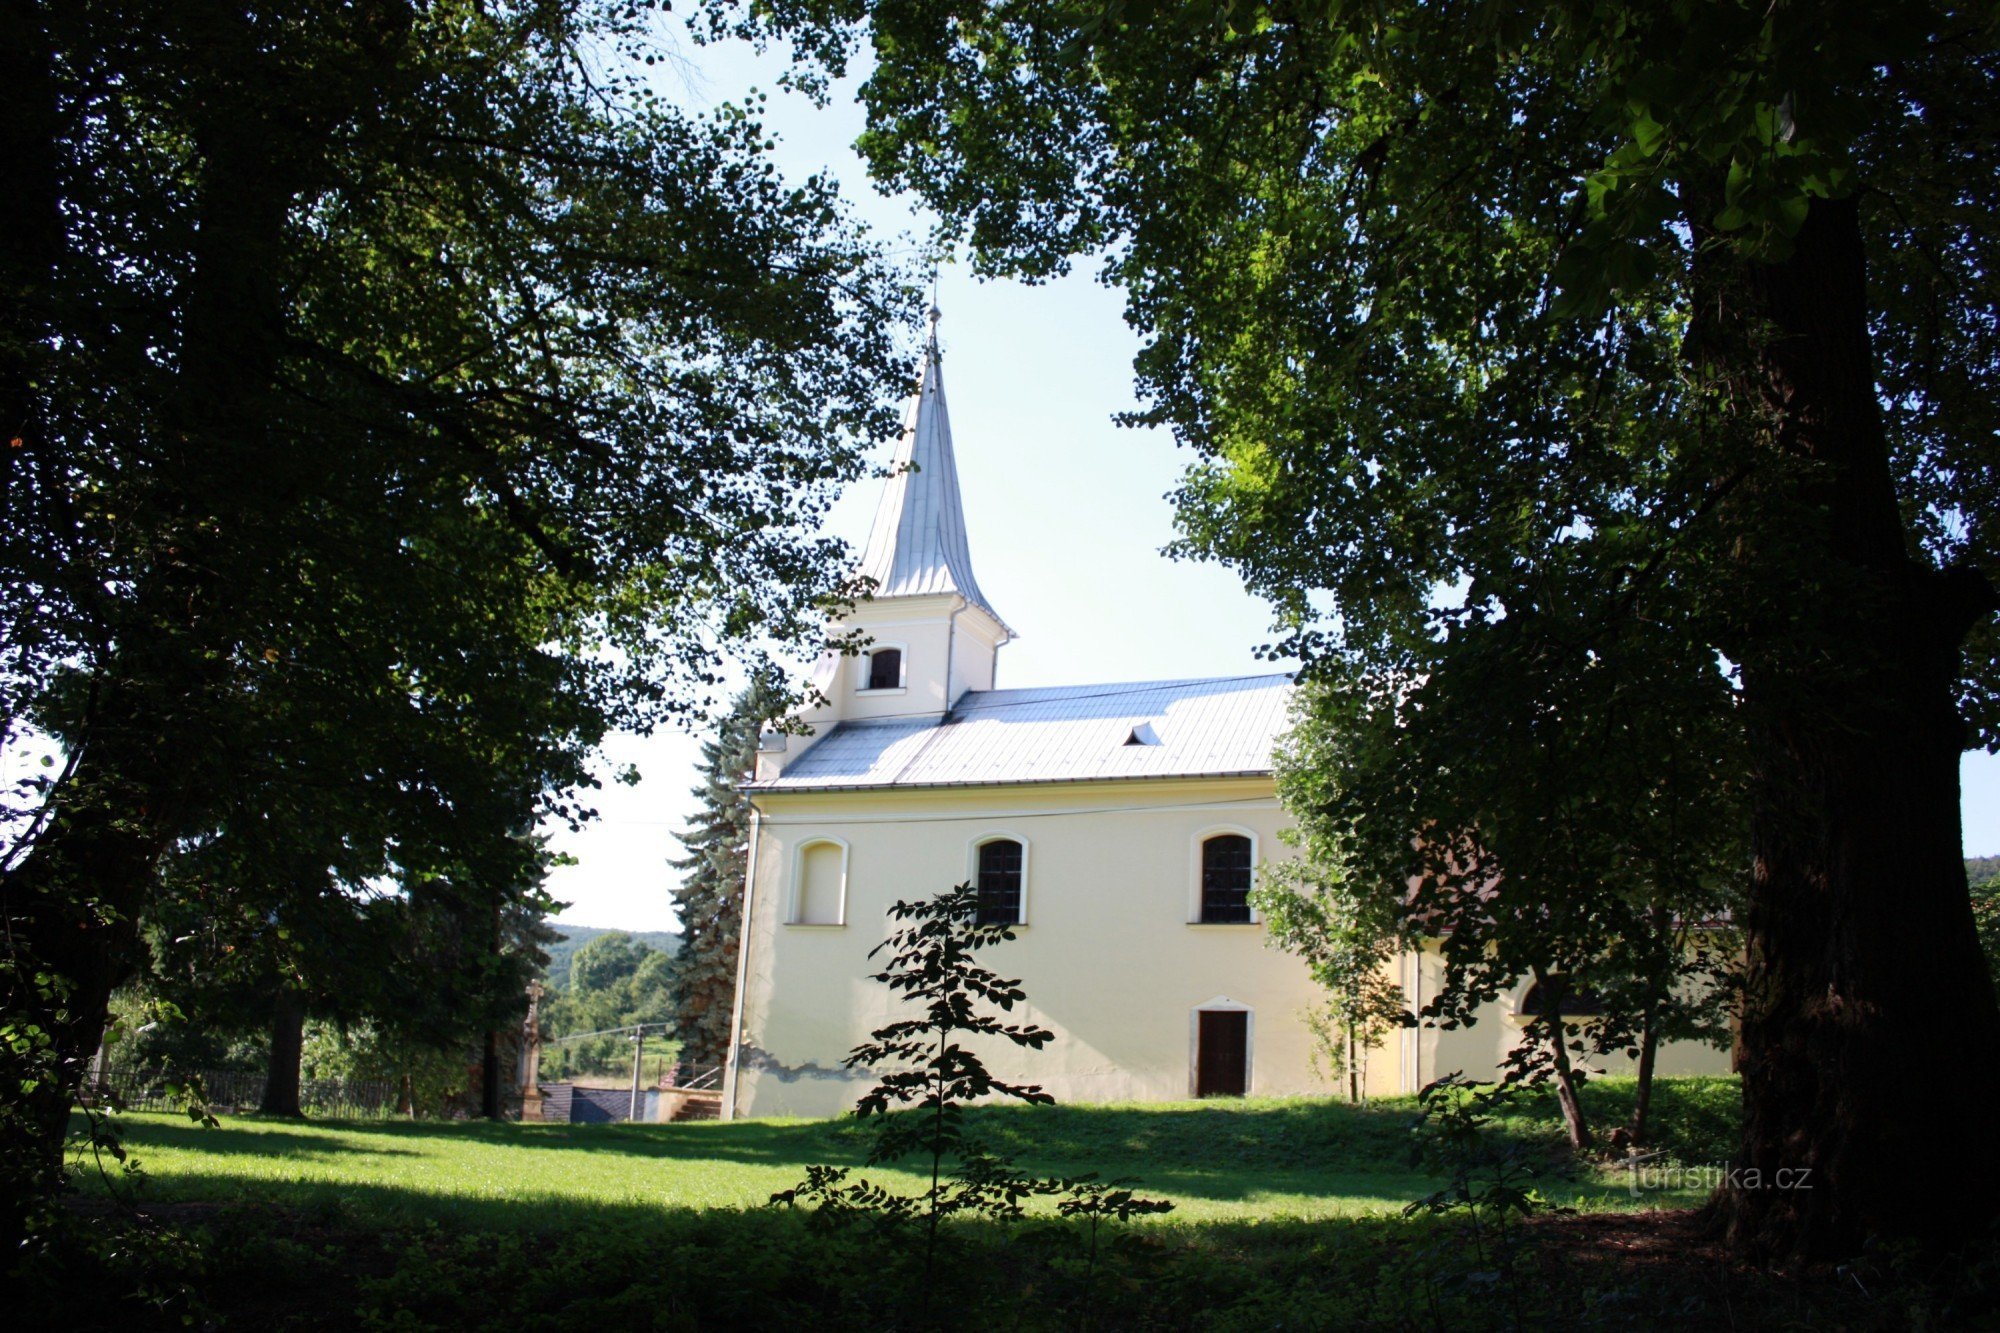 Біля замку знаходиться церква св. Лілія